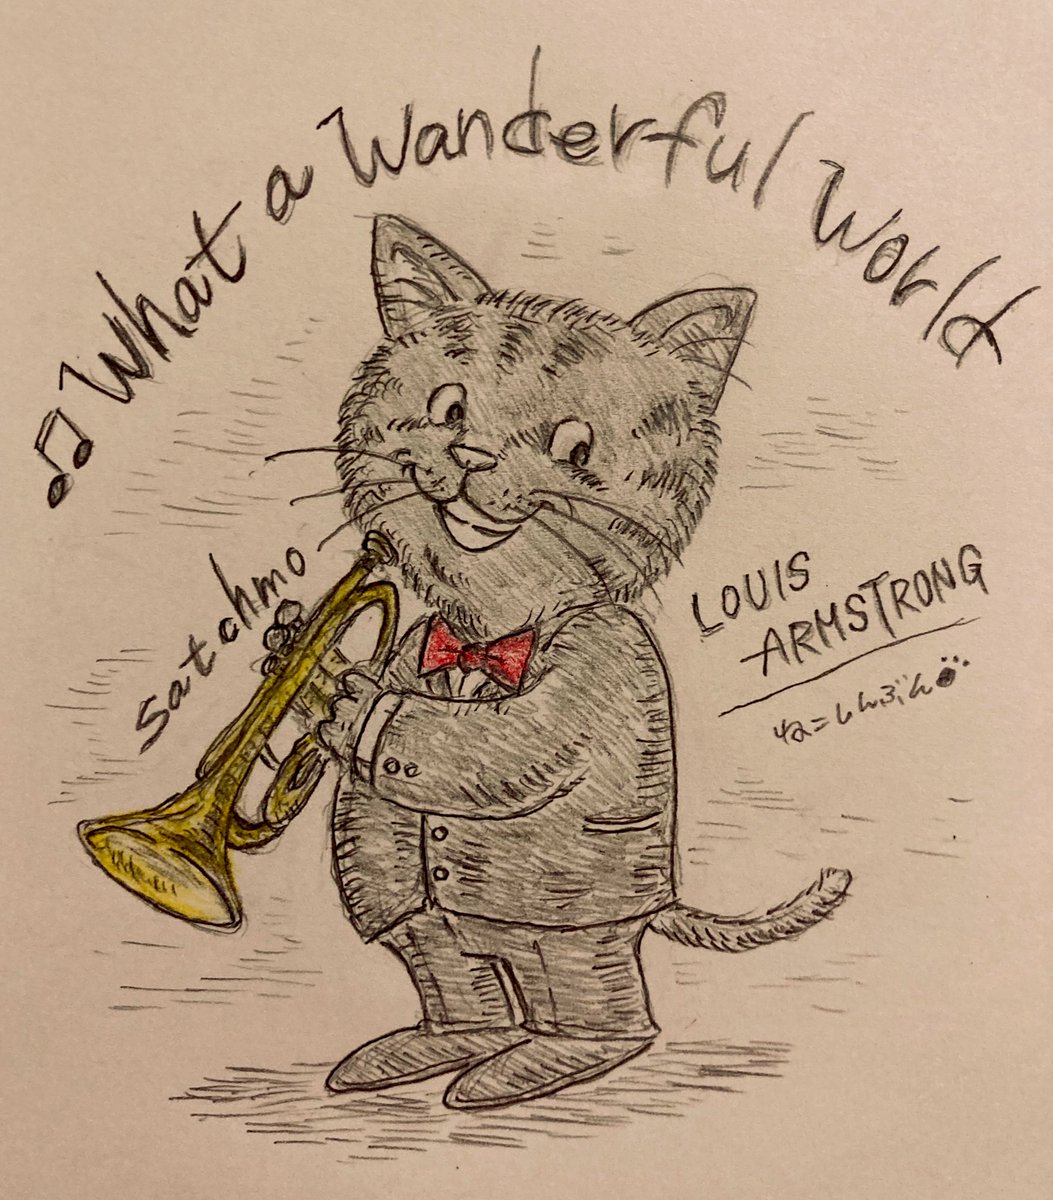 猫界のJazzの神様❗️
ルイアームストロング?
貴方の素晴らしい声とトランペットは最高です✨(=^x^=)
#Jazz #LouisArmstrong  #アナログイラスト #音楽 #猫イラスト #イラスト #ルイアームストロング 